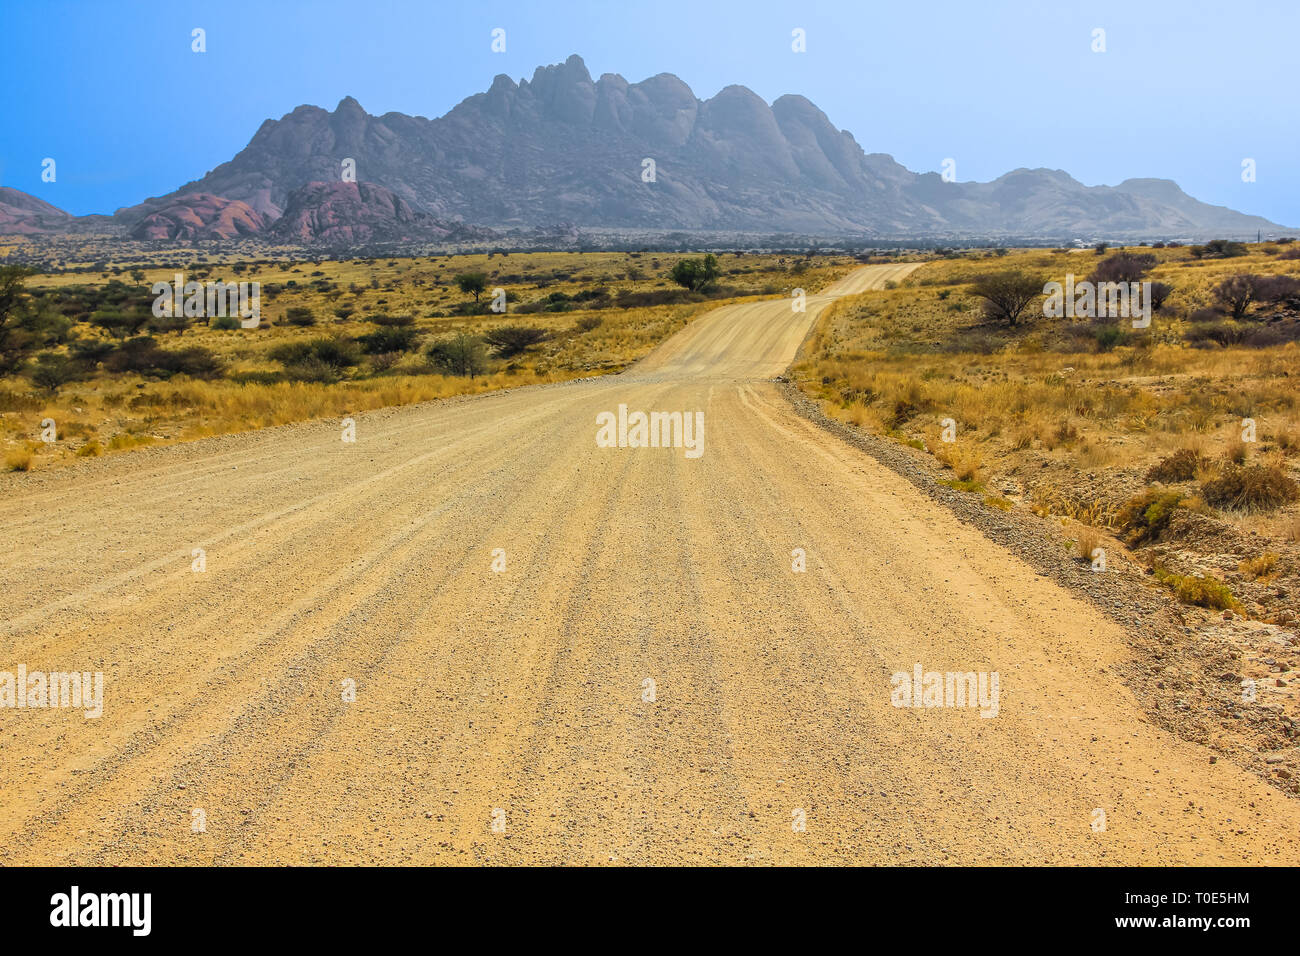 Route de terre à Spitzkoppe en saison sèche, une montagne de granite rock formation situé entre Usakos et Swakopmund, dans le désert du Namib, Namibie. Banque D'Images